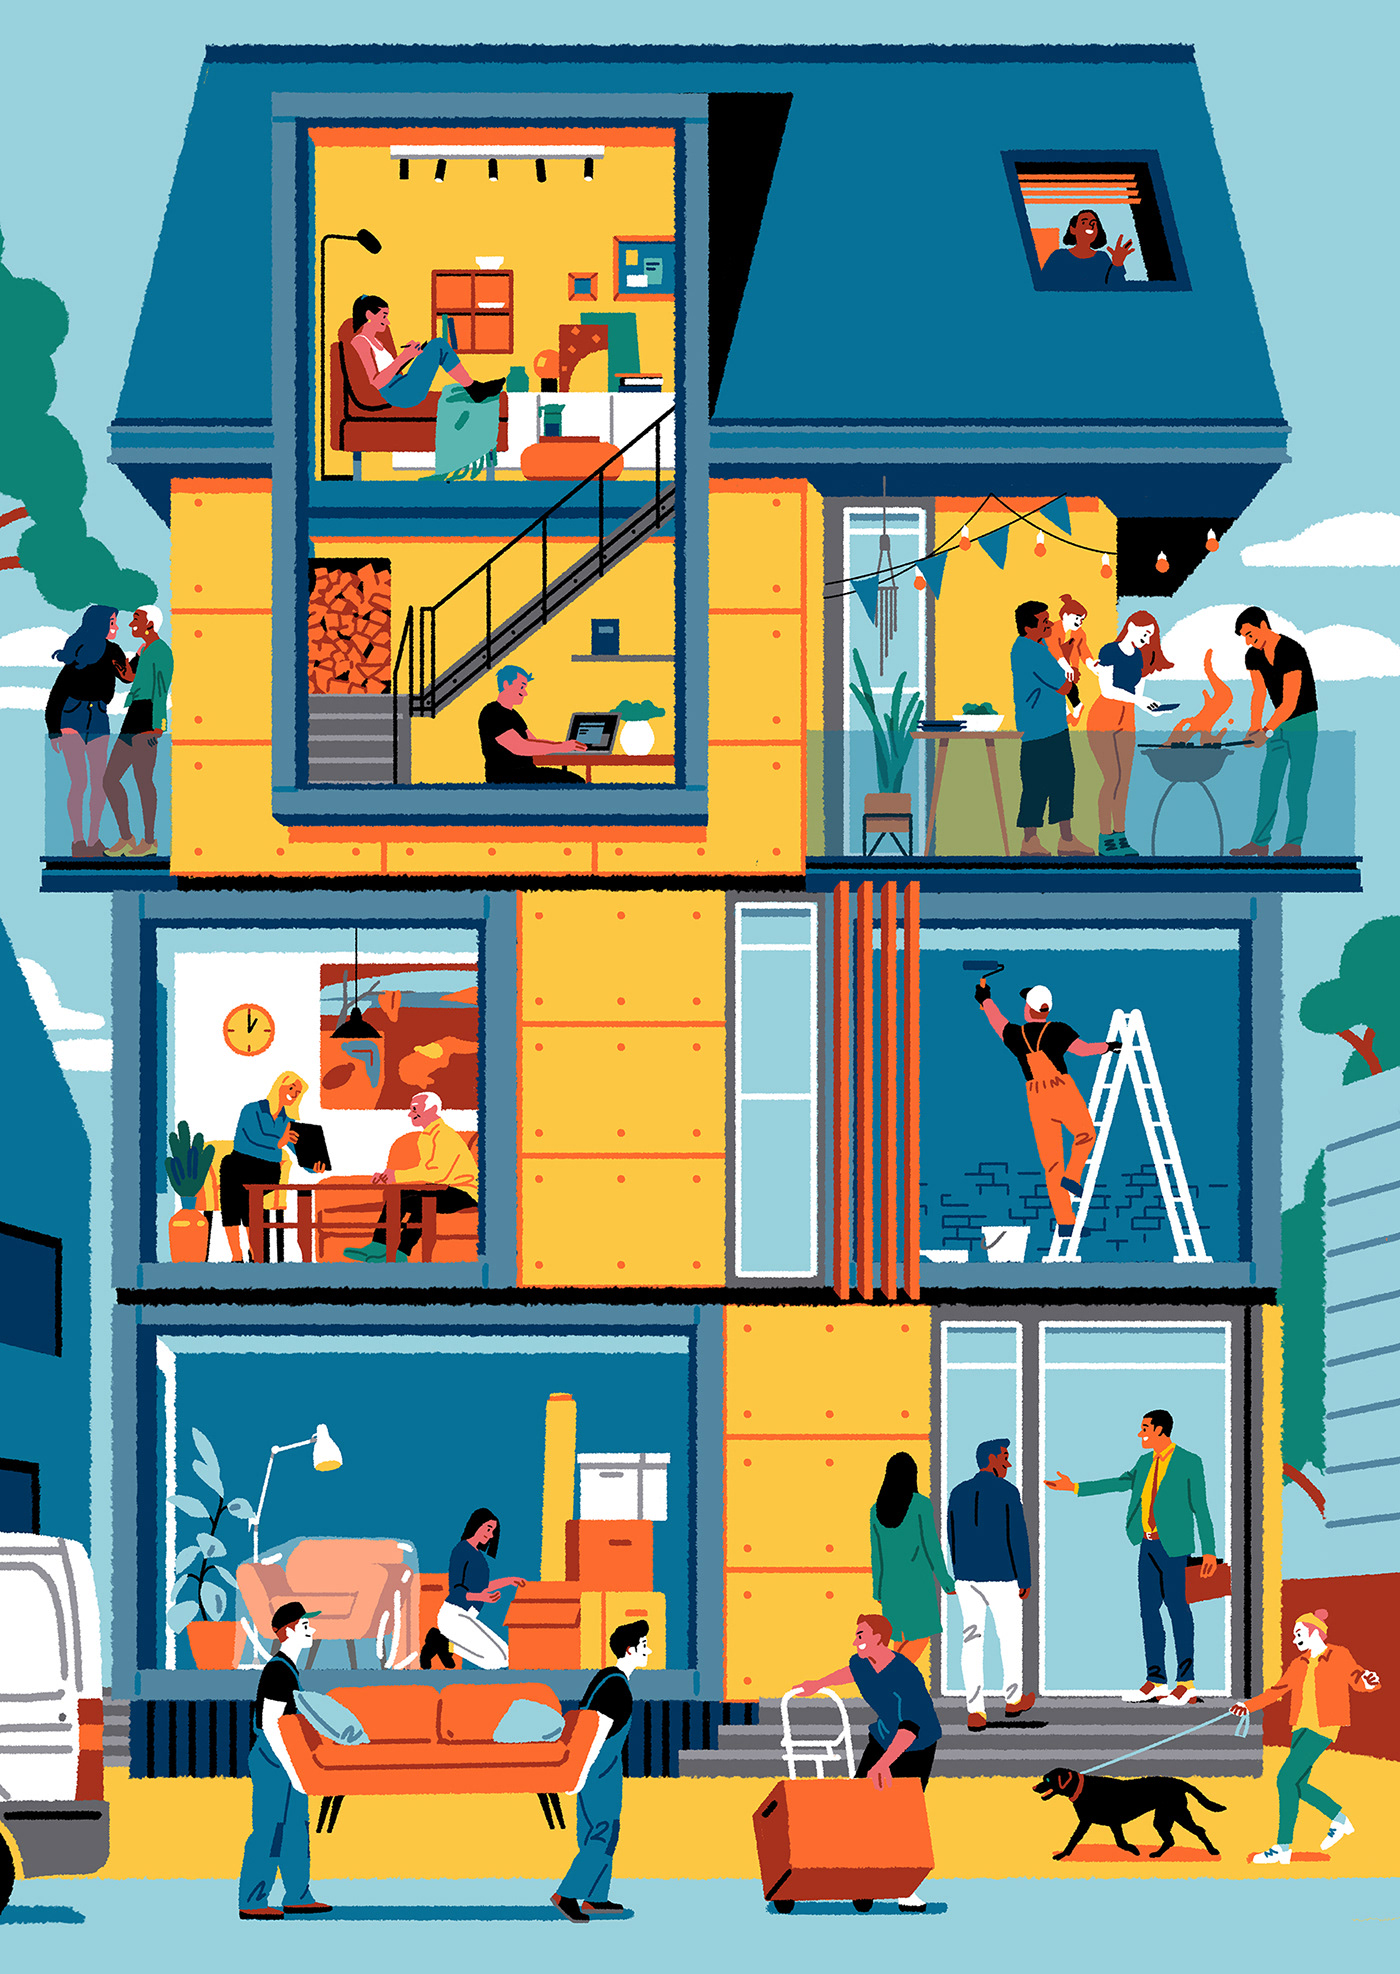 Illustrations idea #298: Perl. social housing illustration